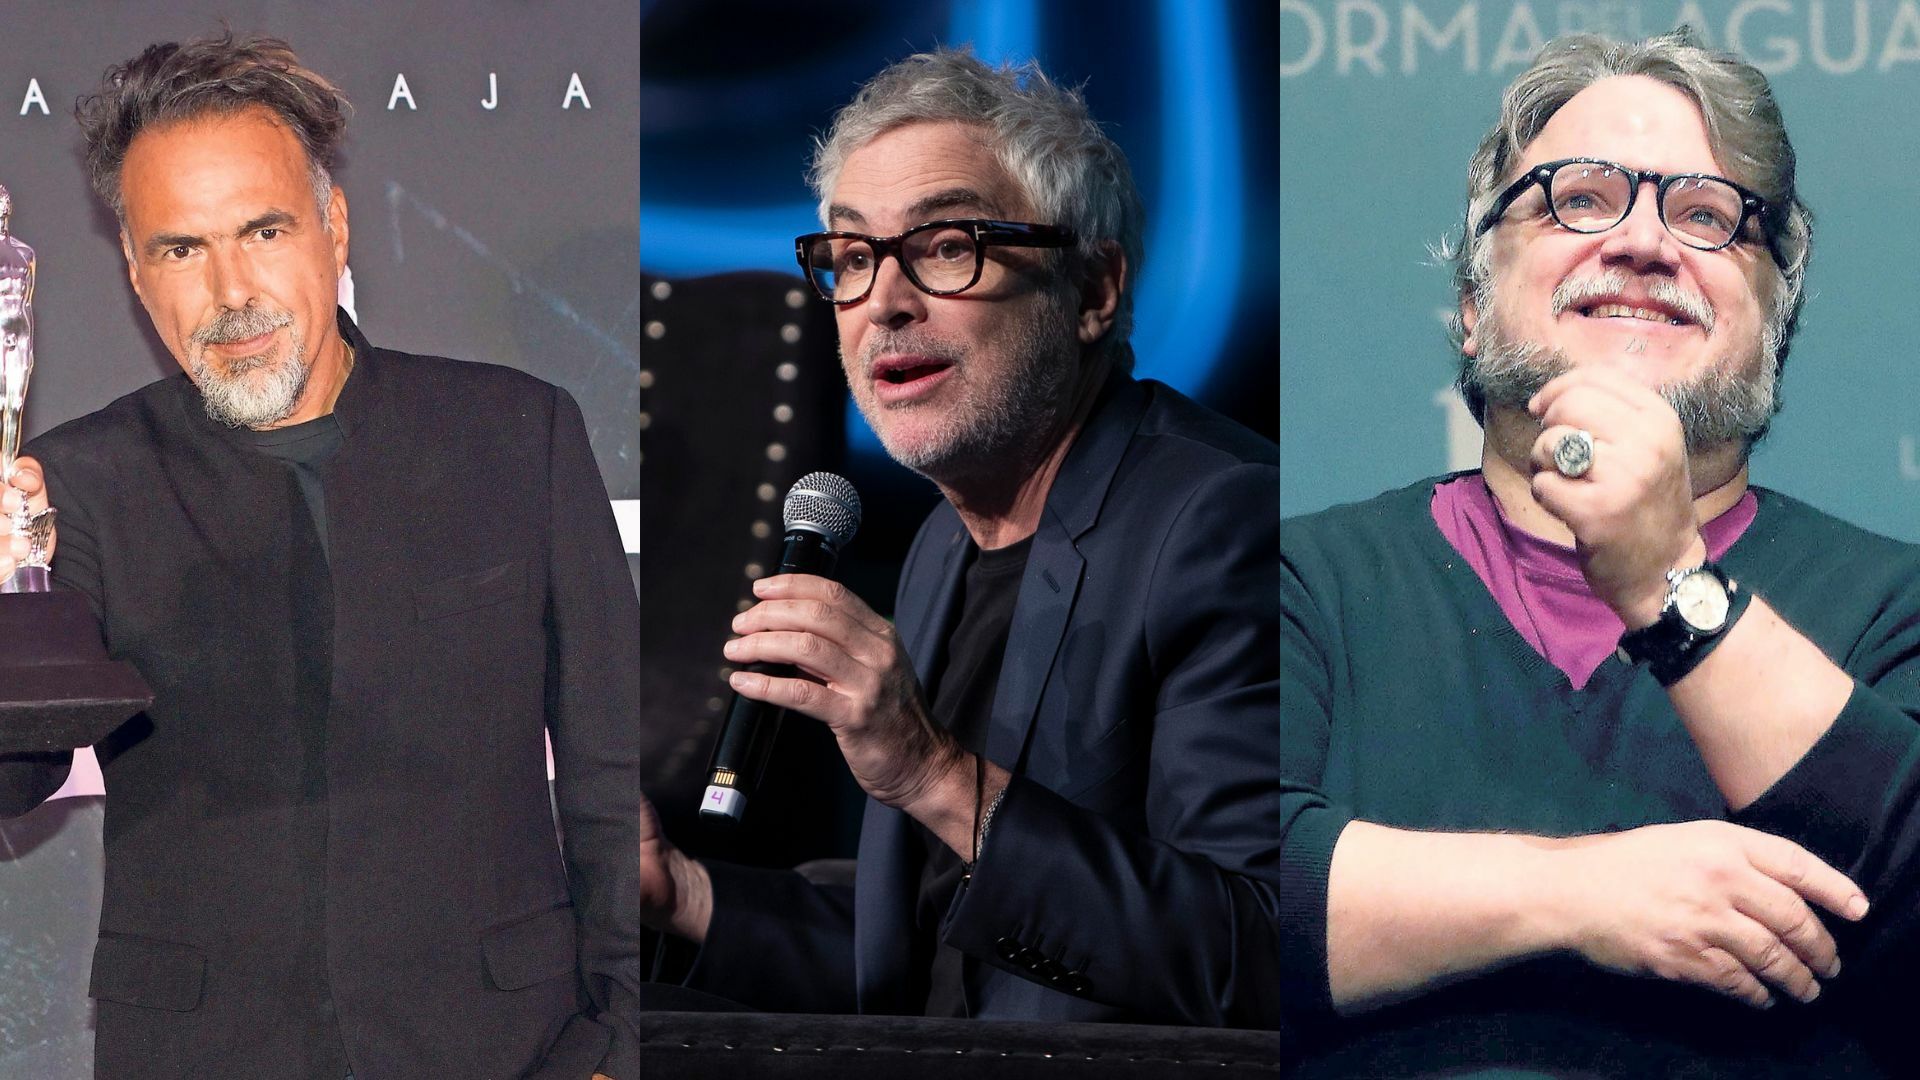 ¿Cuáles son los próximos proyectos de Alejandro González Iñárritu, Alfonso Cuarón y Guillermo del Toro?. Noticias en tiempo real